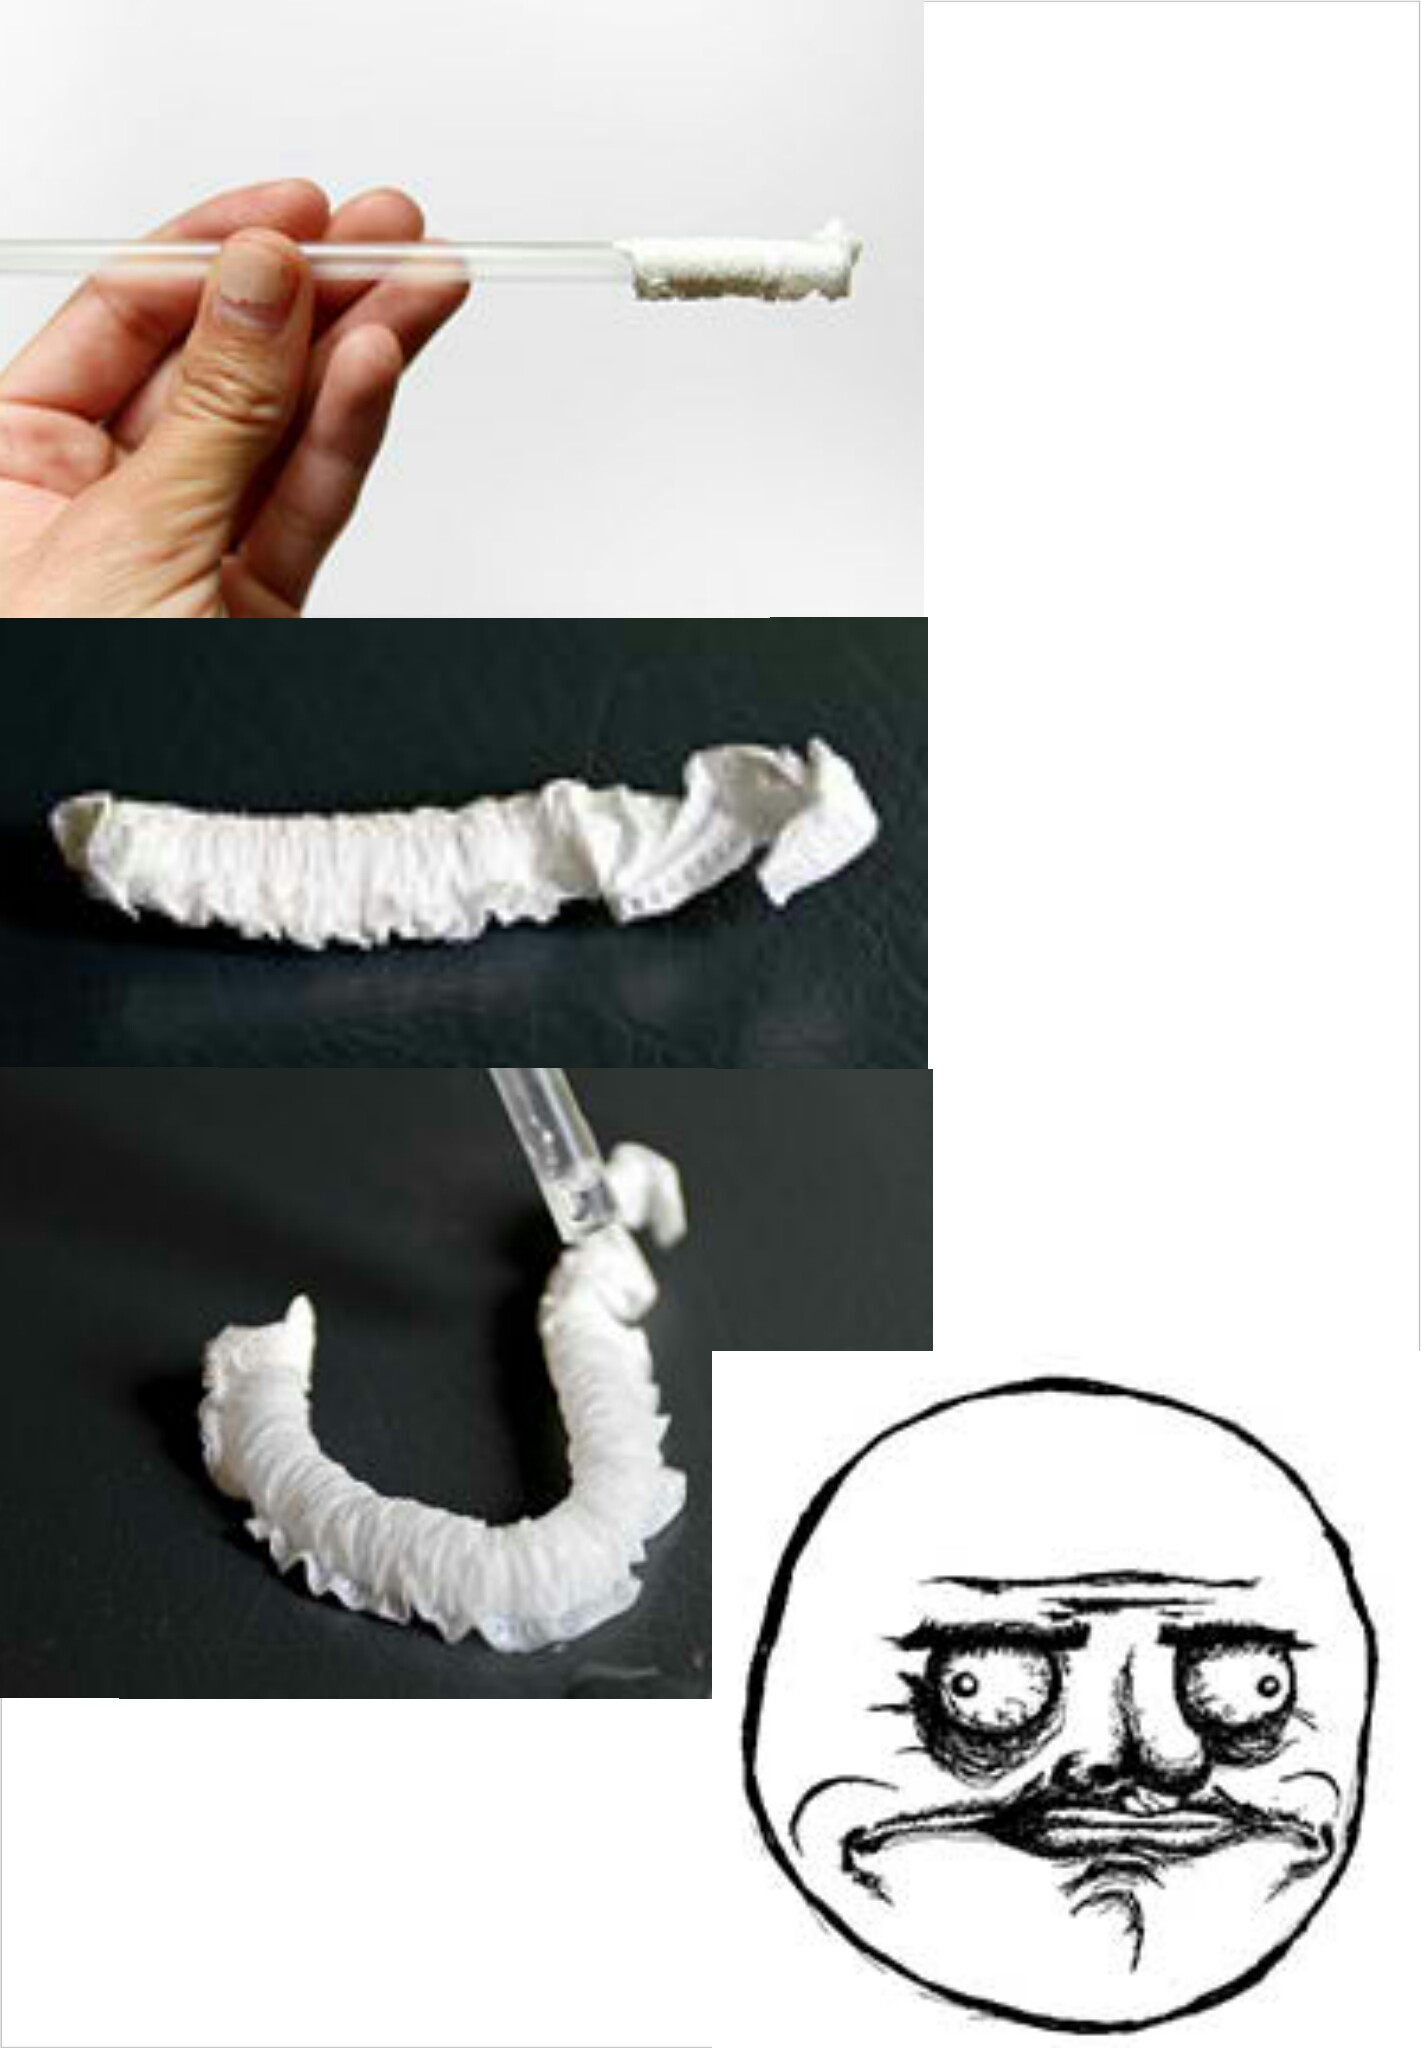 paper worm - meme